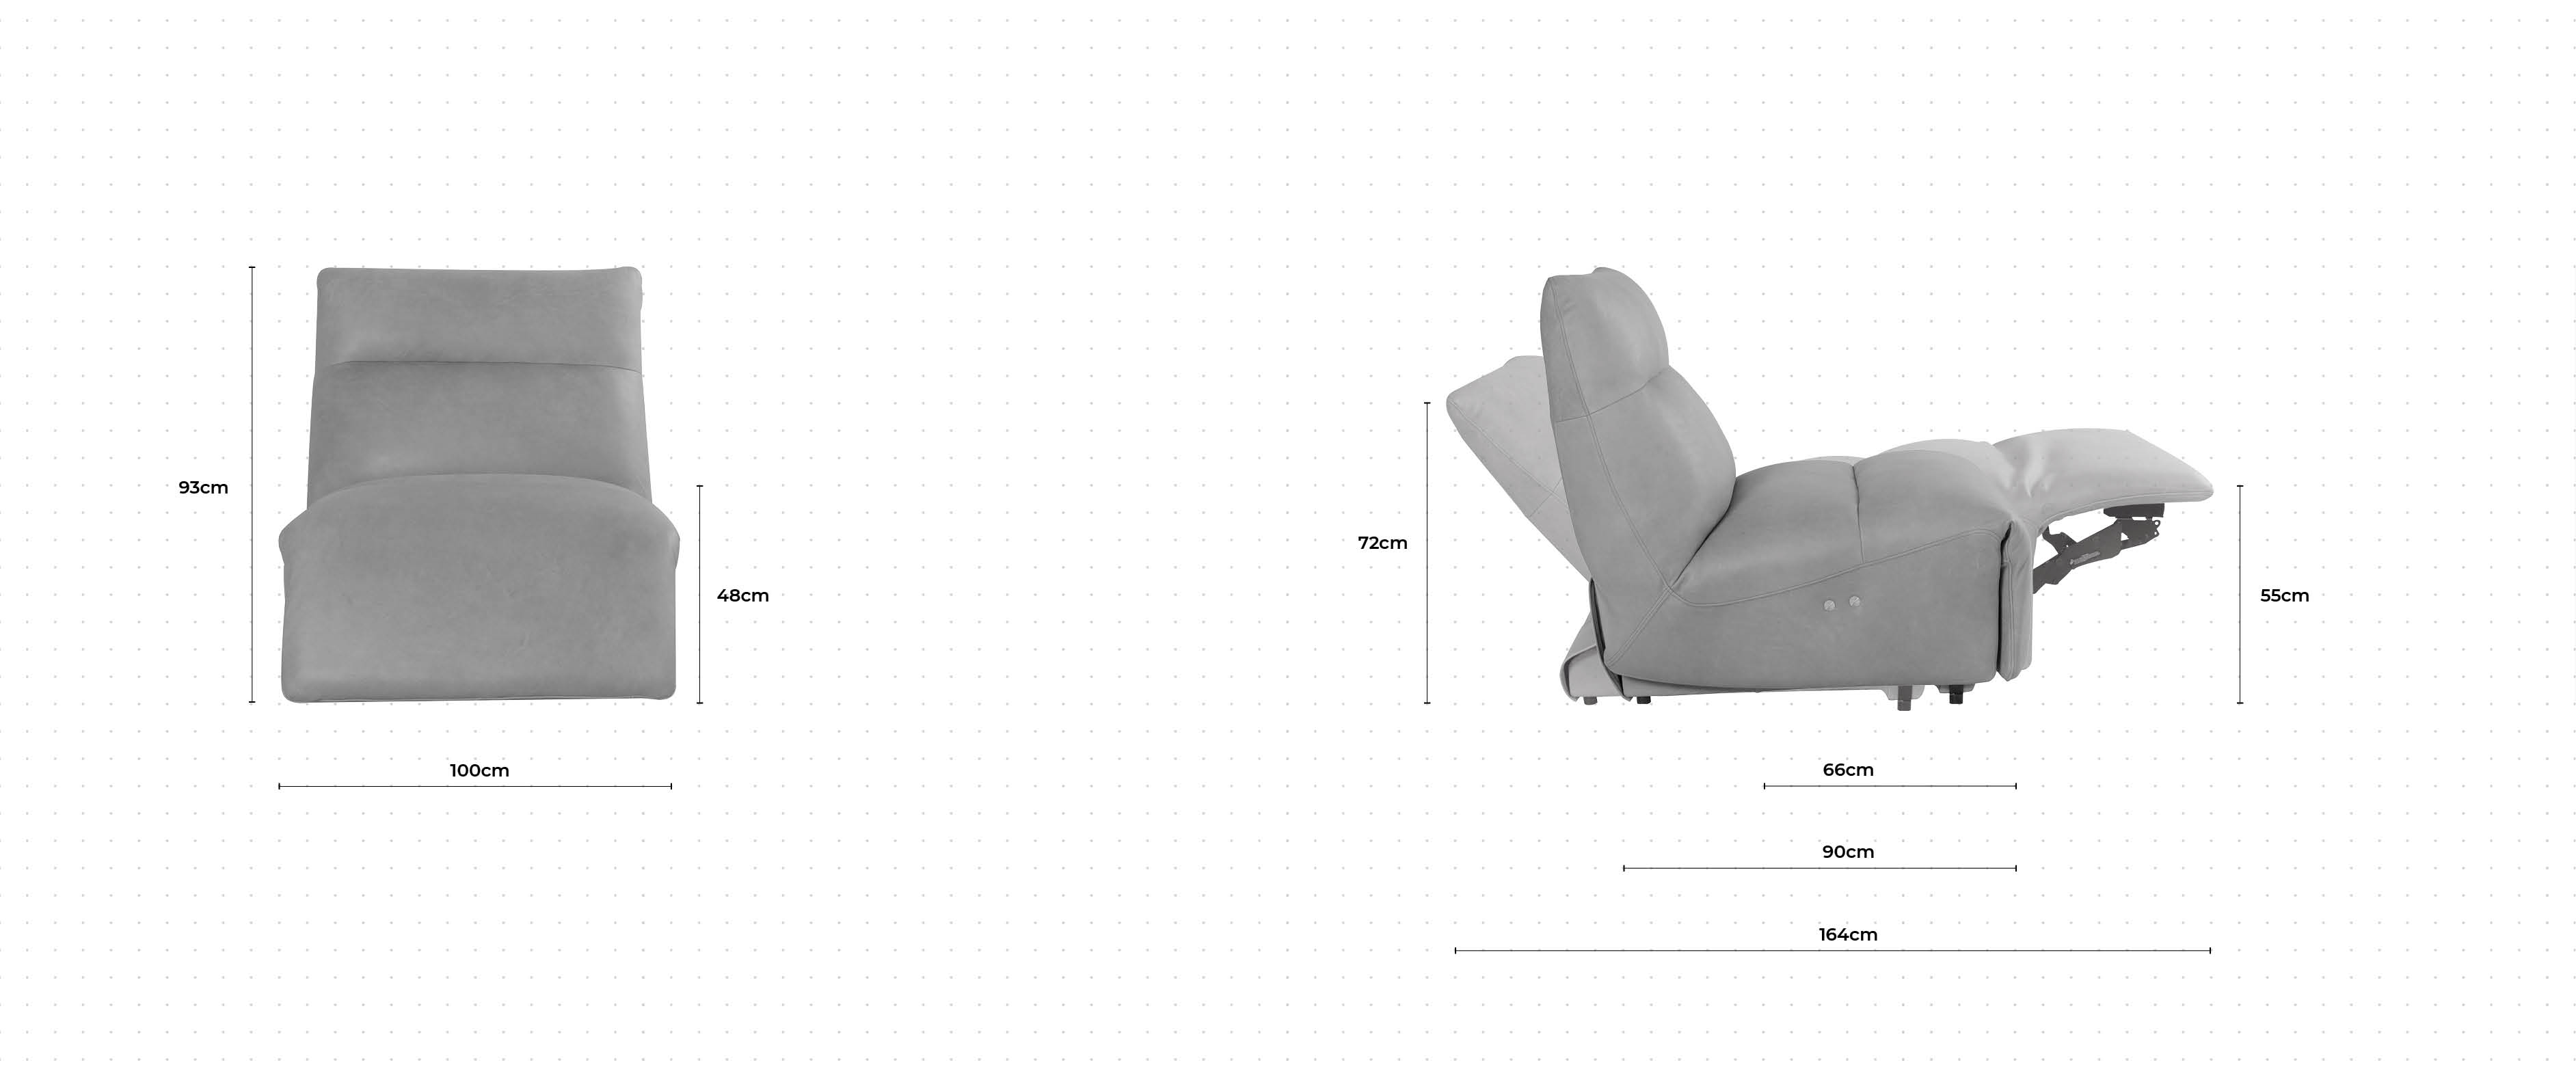 Charlton Chair dimensions